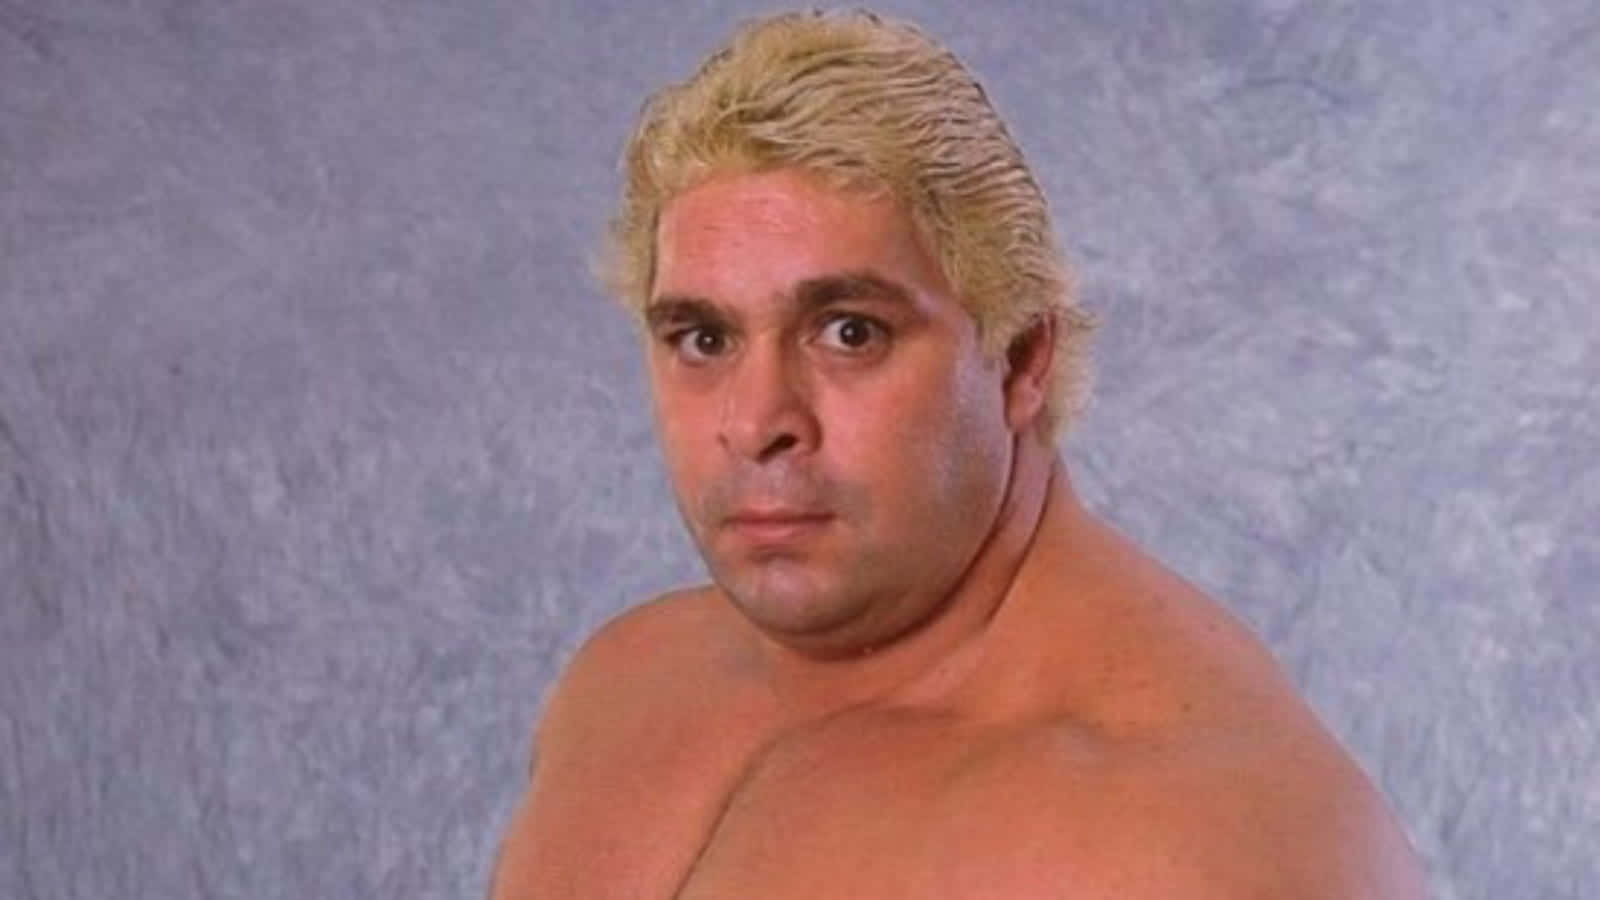 Dino Bravo Sporting Dyed Blonde Hair Wallpaper